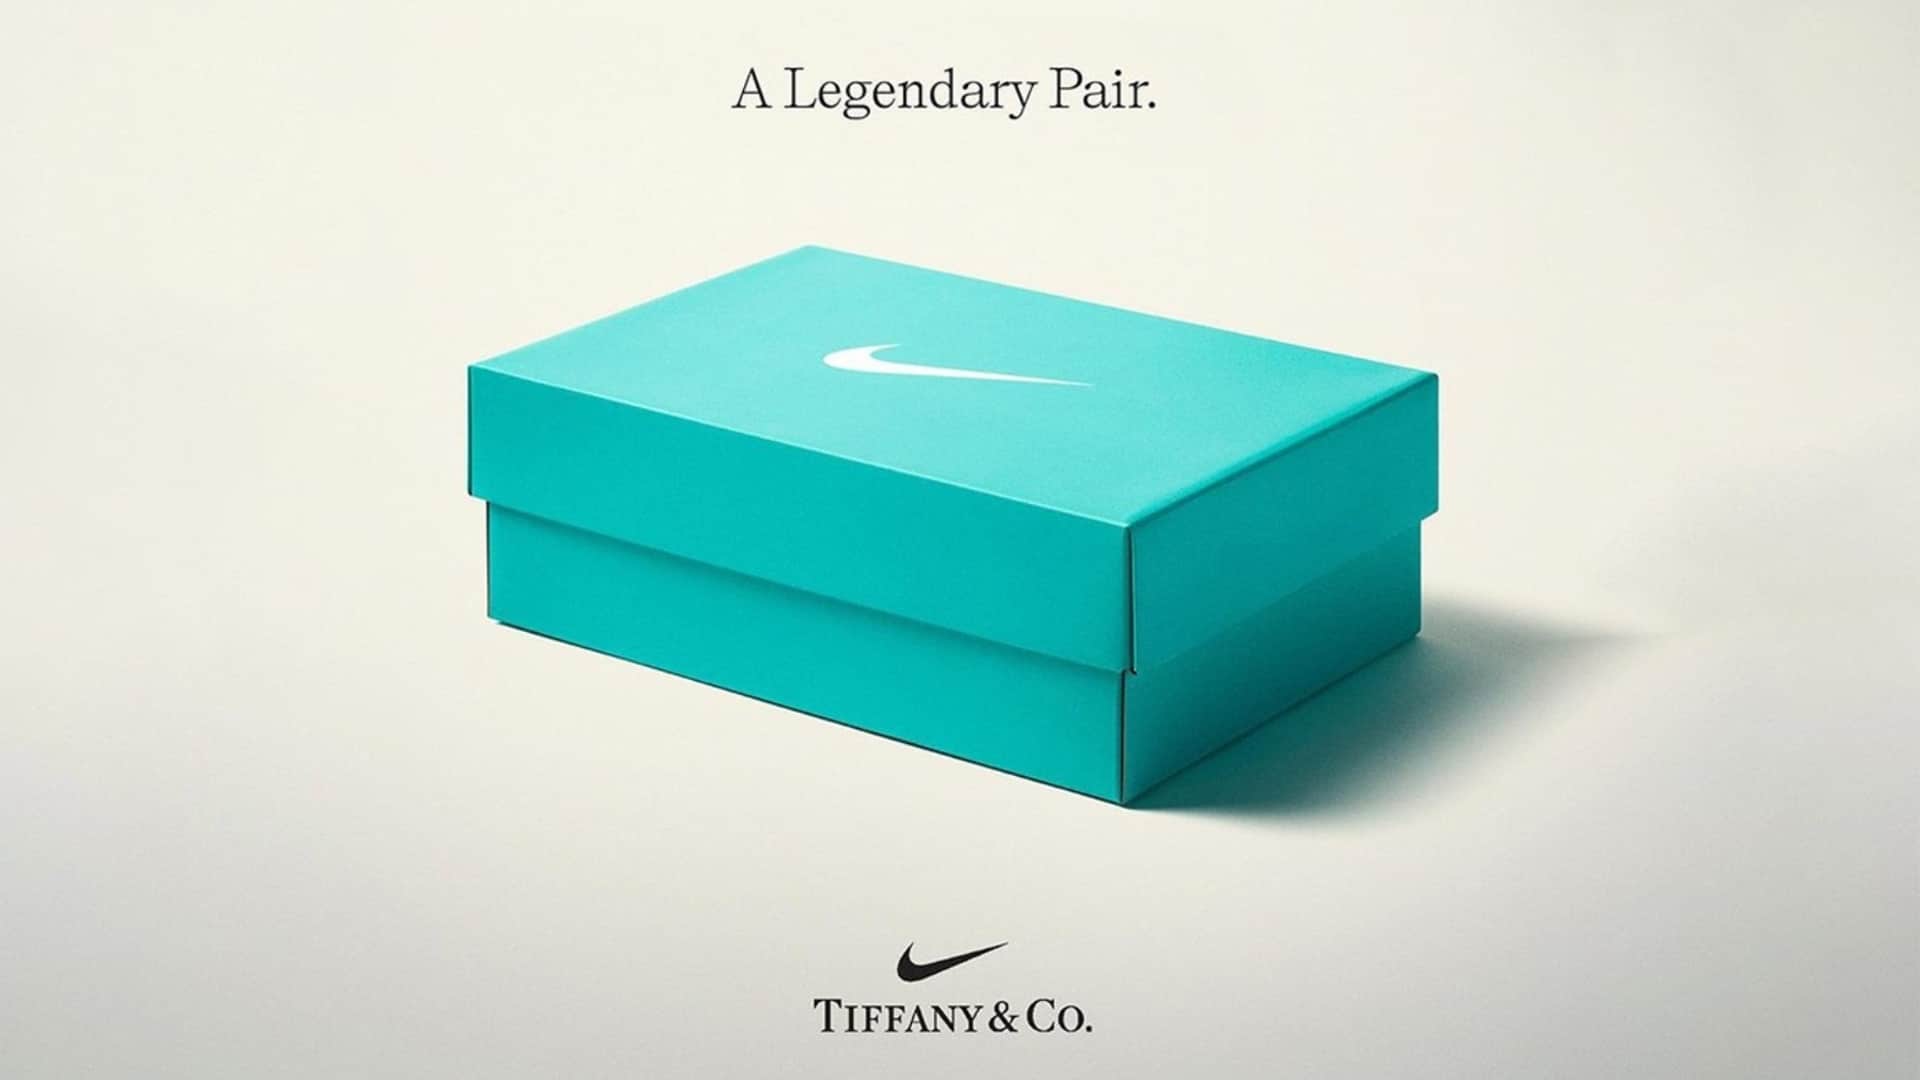 Maniobra Inaccesible dorado Nike anuncia sua colaboração com a Tiffany & Co. - GKPB - Geek Publicitário